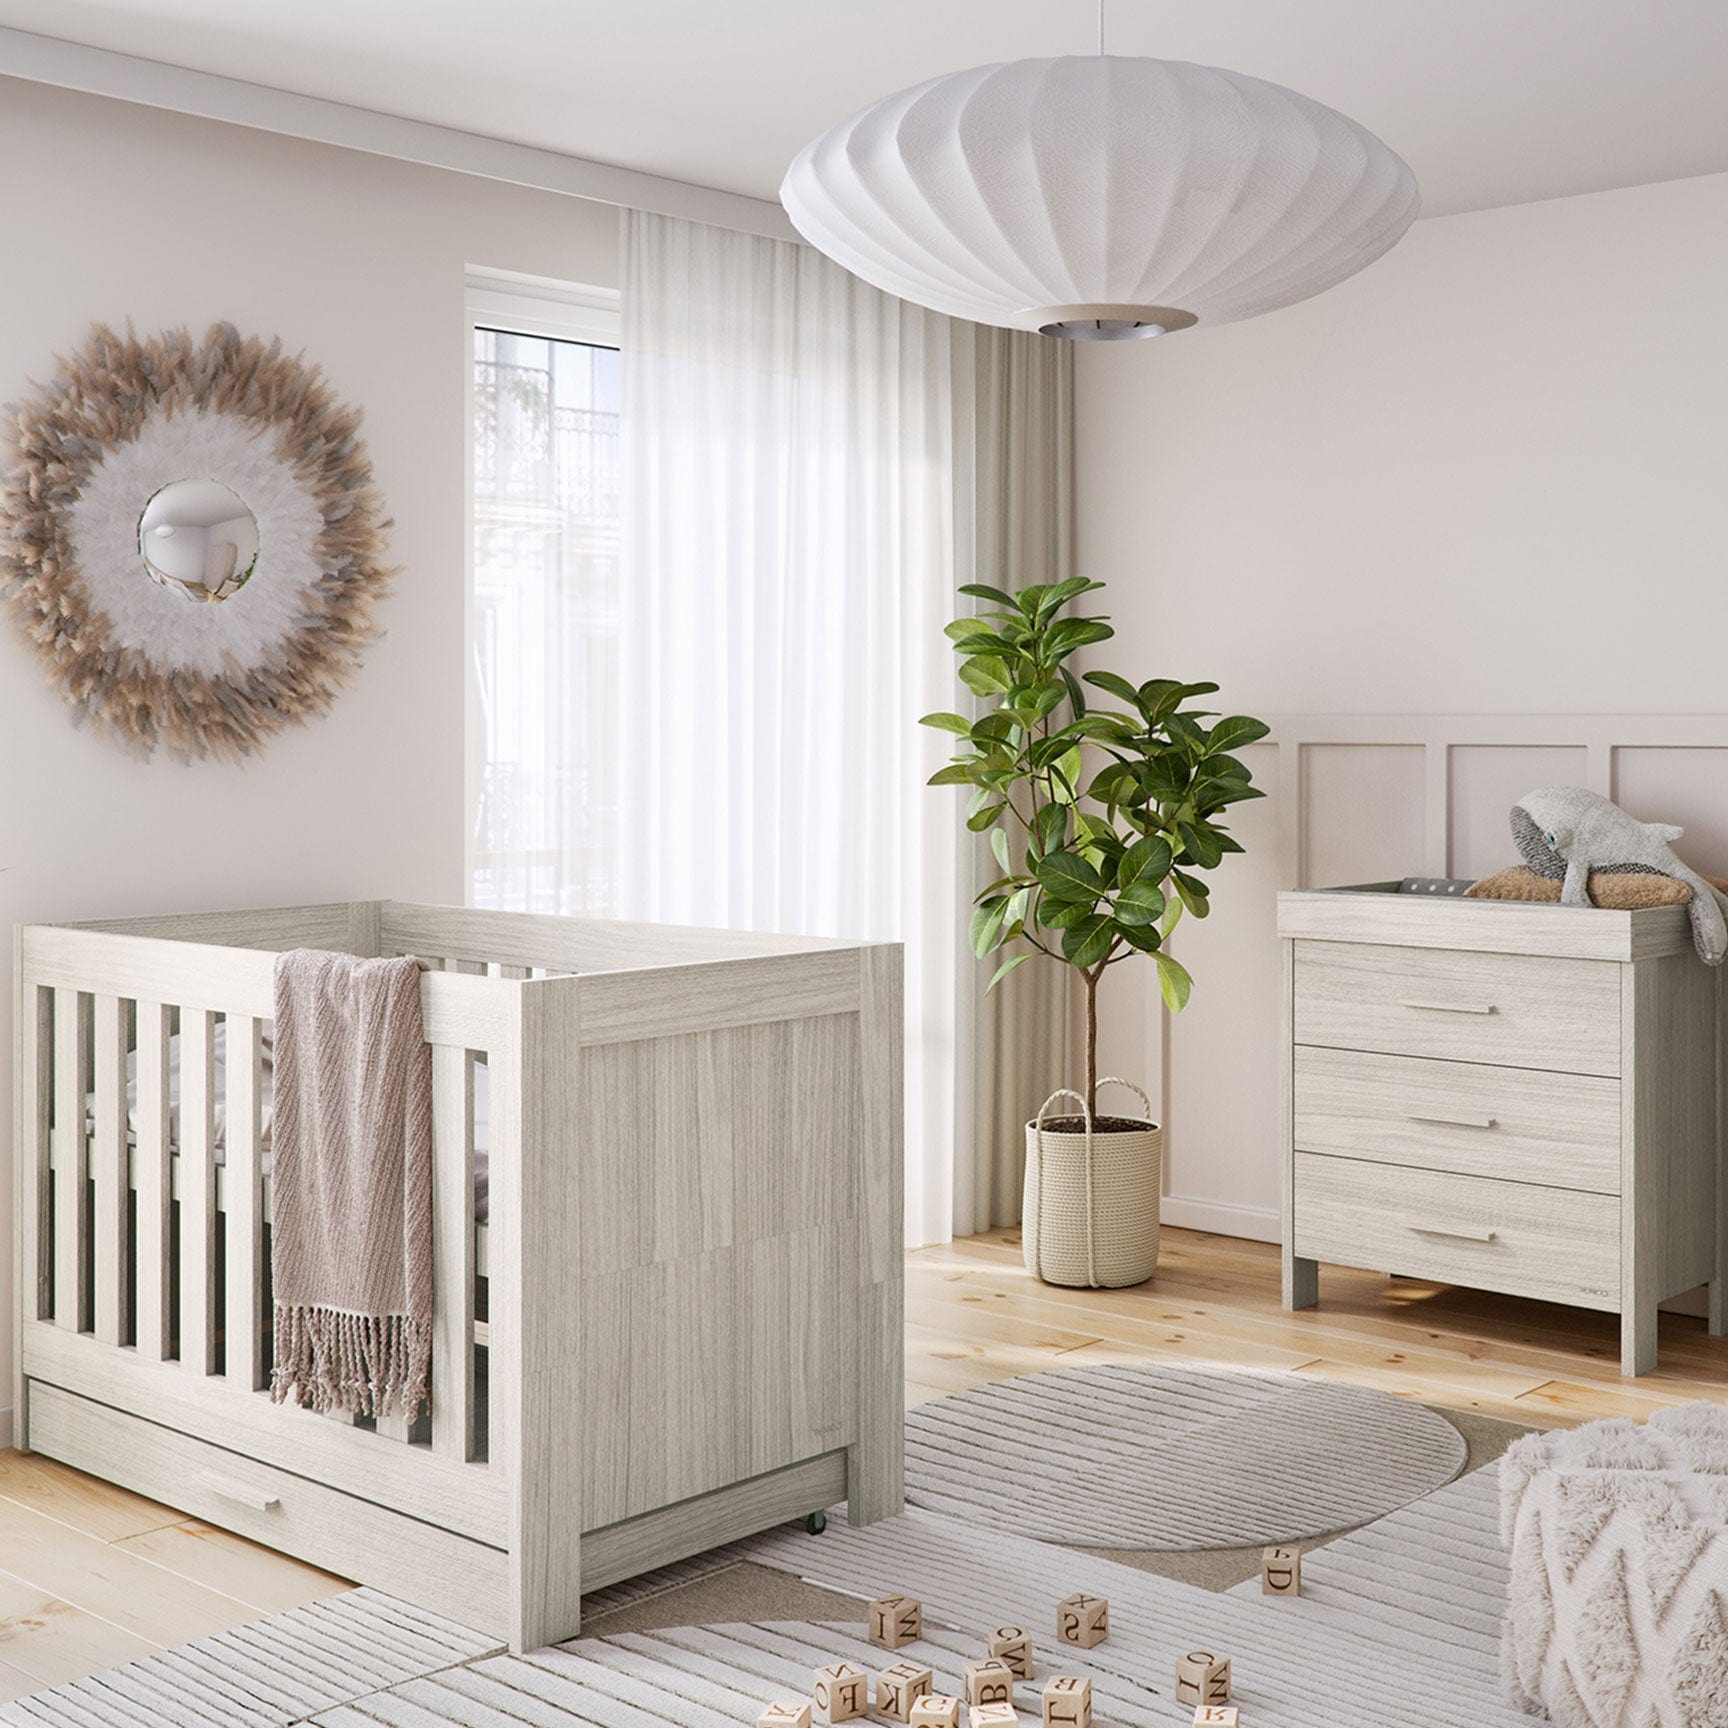 Venicci Nursery Room Sets Venicci Forenzo 2 Piece Dresser Roomset in Nordic White